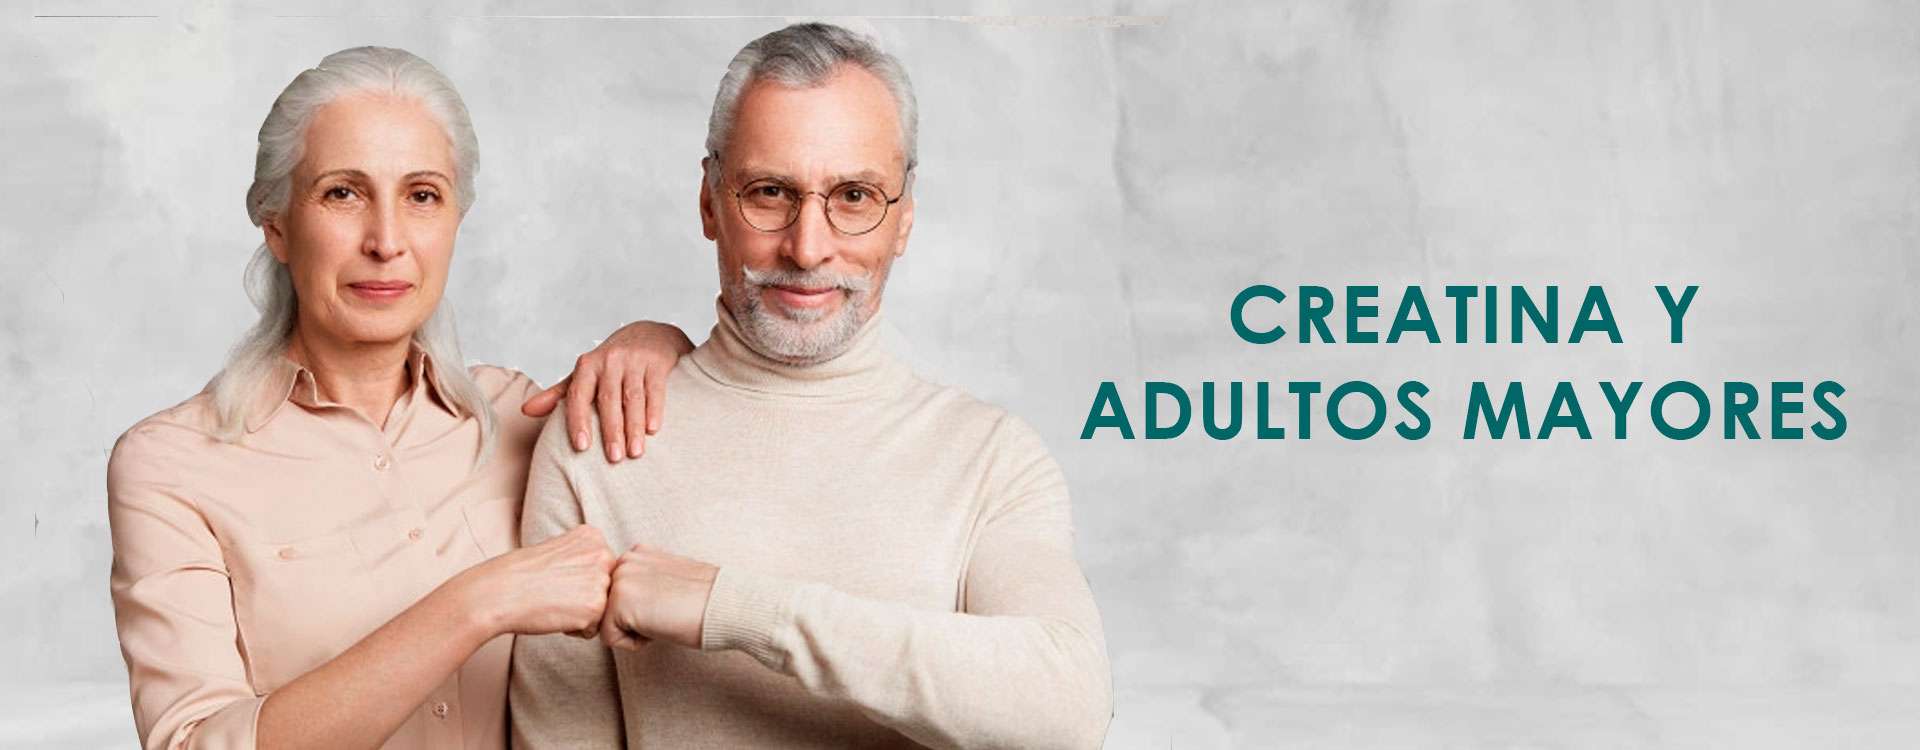 Efectos de la creatina en adultos mayores